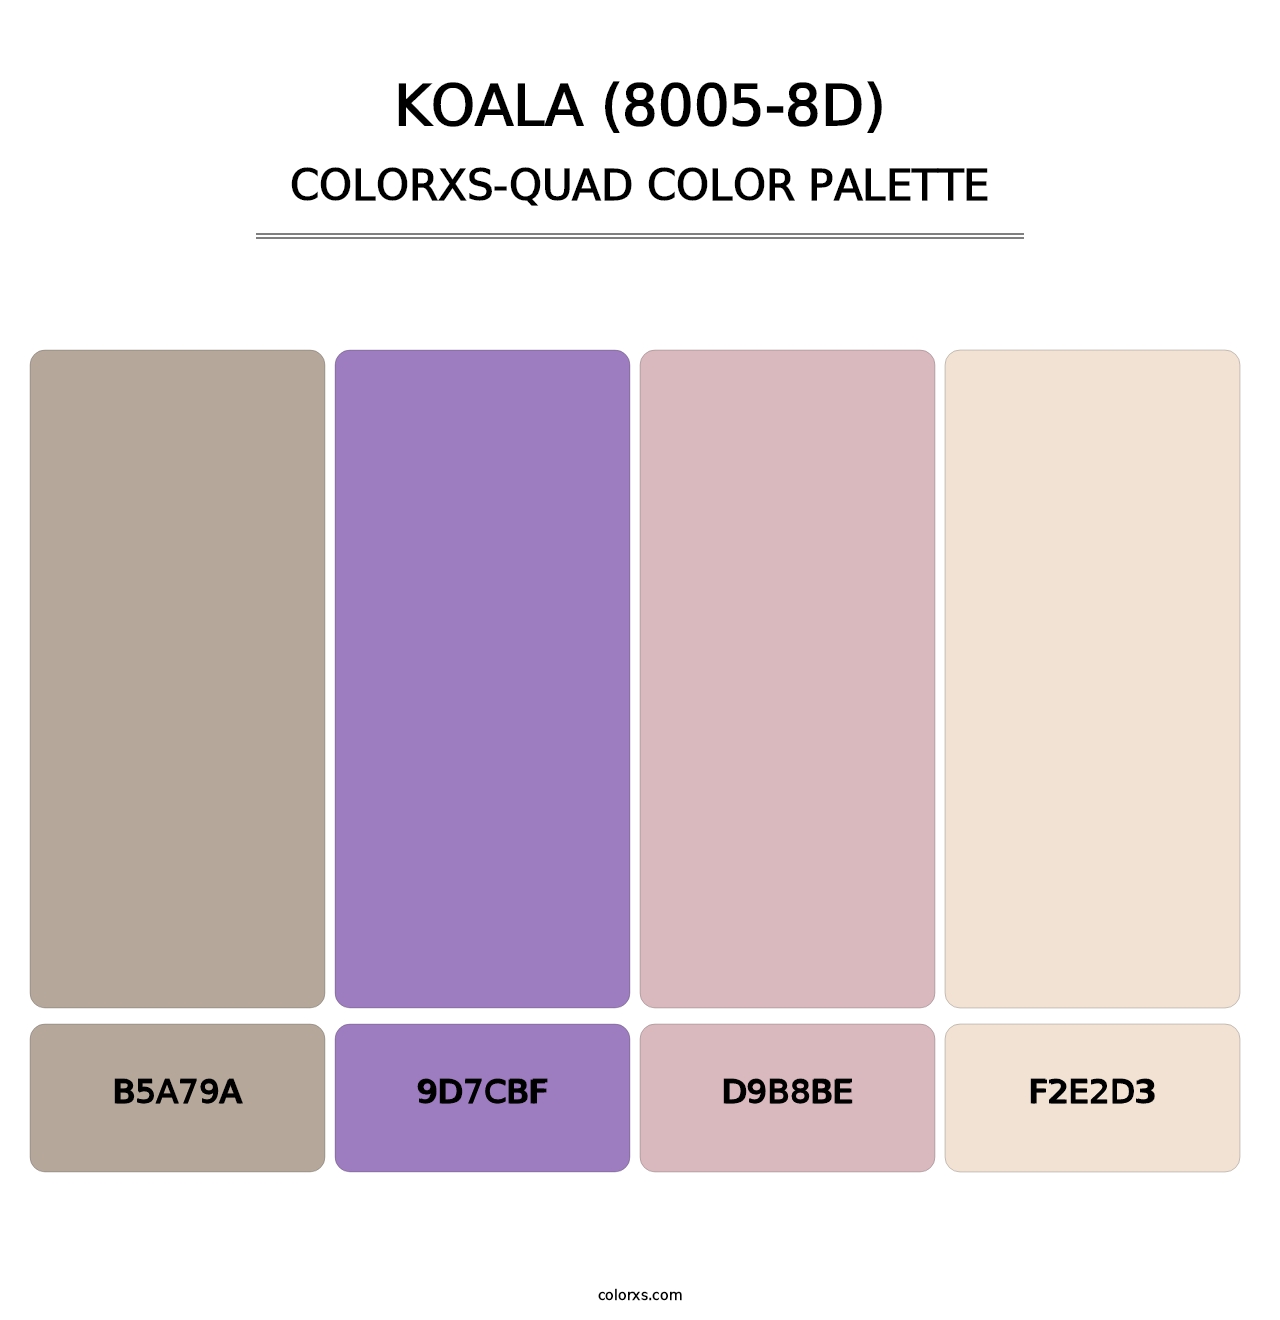 Koala (8005-8D) - Colorxs Quad Palette